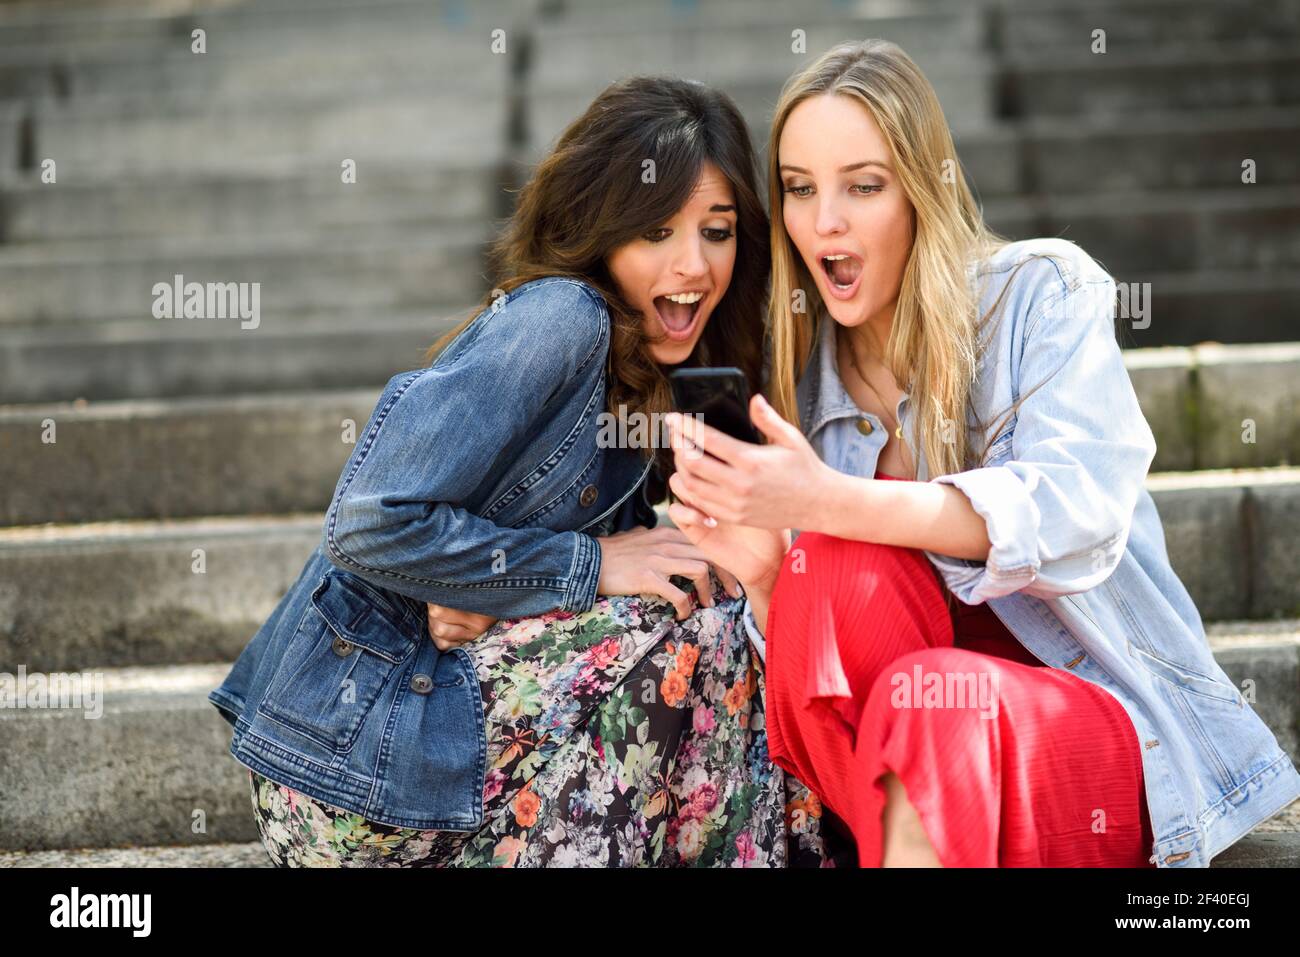 Zwei junge Frauen durch, was Sie auf Ihrem smart phone draußen sehen, staunen, sitzen auf den städtischen Schritte. Freunde Mädchen. Stockfoto